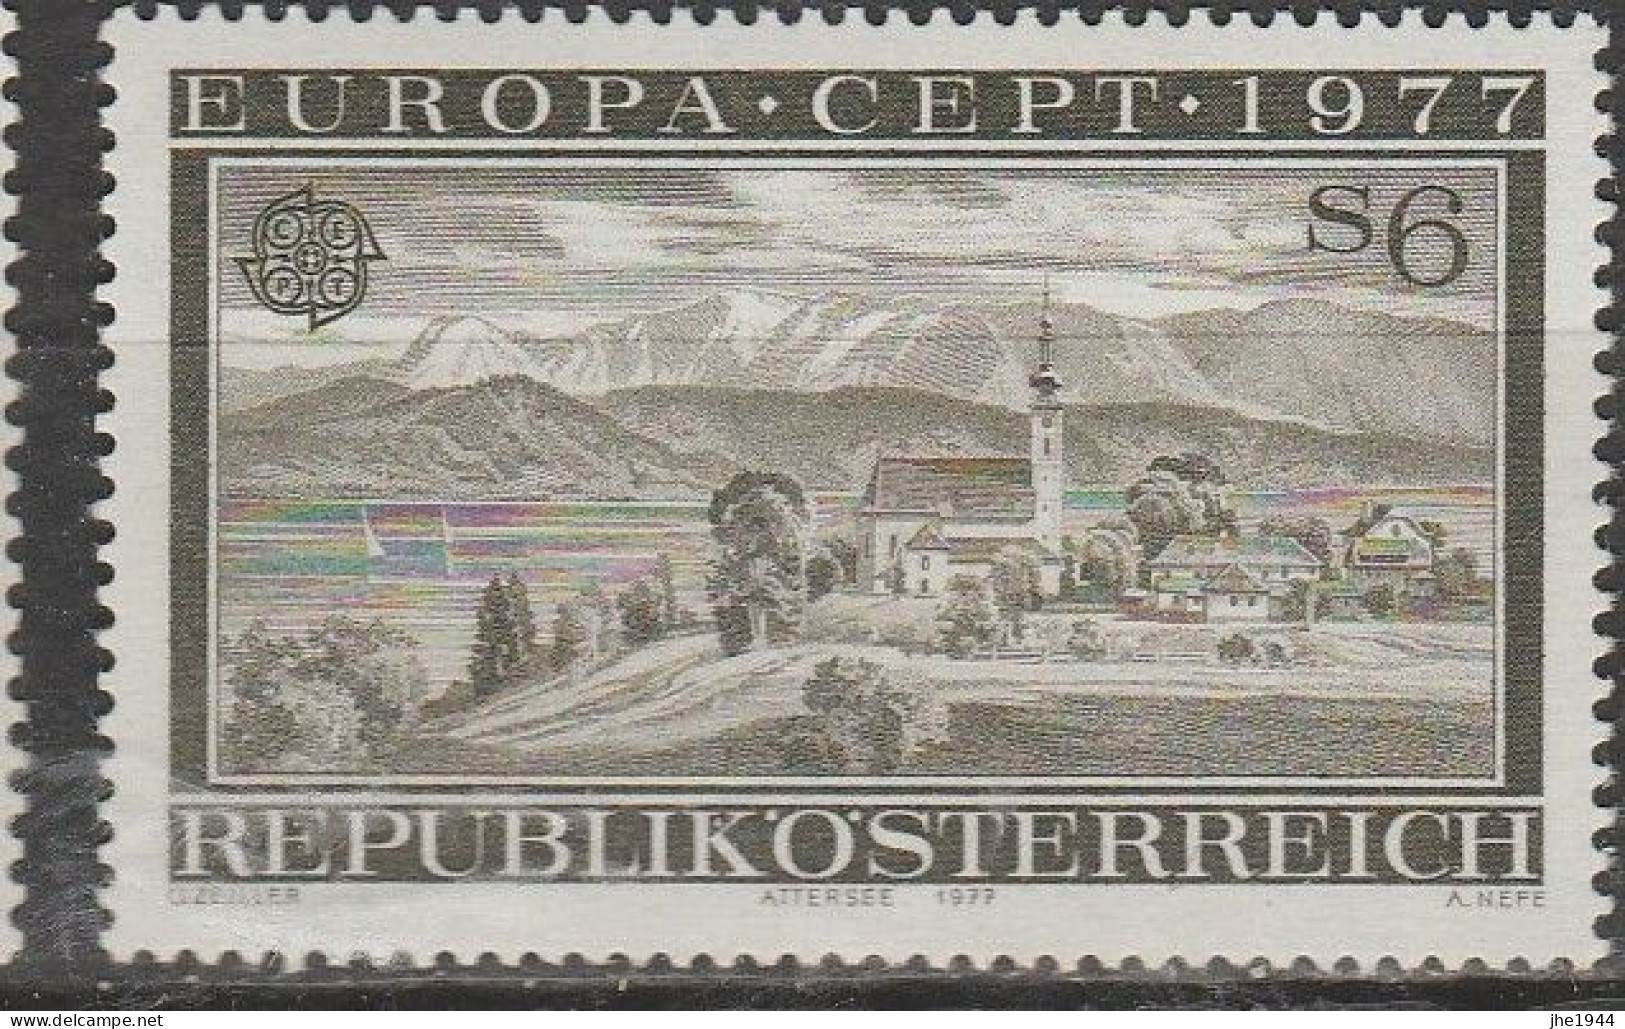 Autriche Europa 1977 N° 1383 ** Paysages - 1977